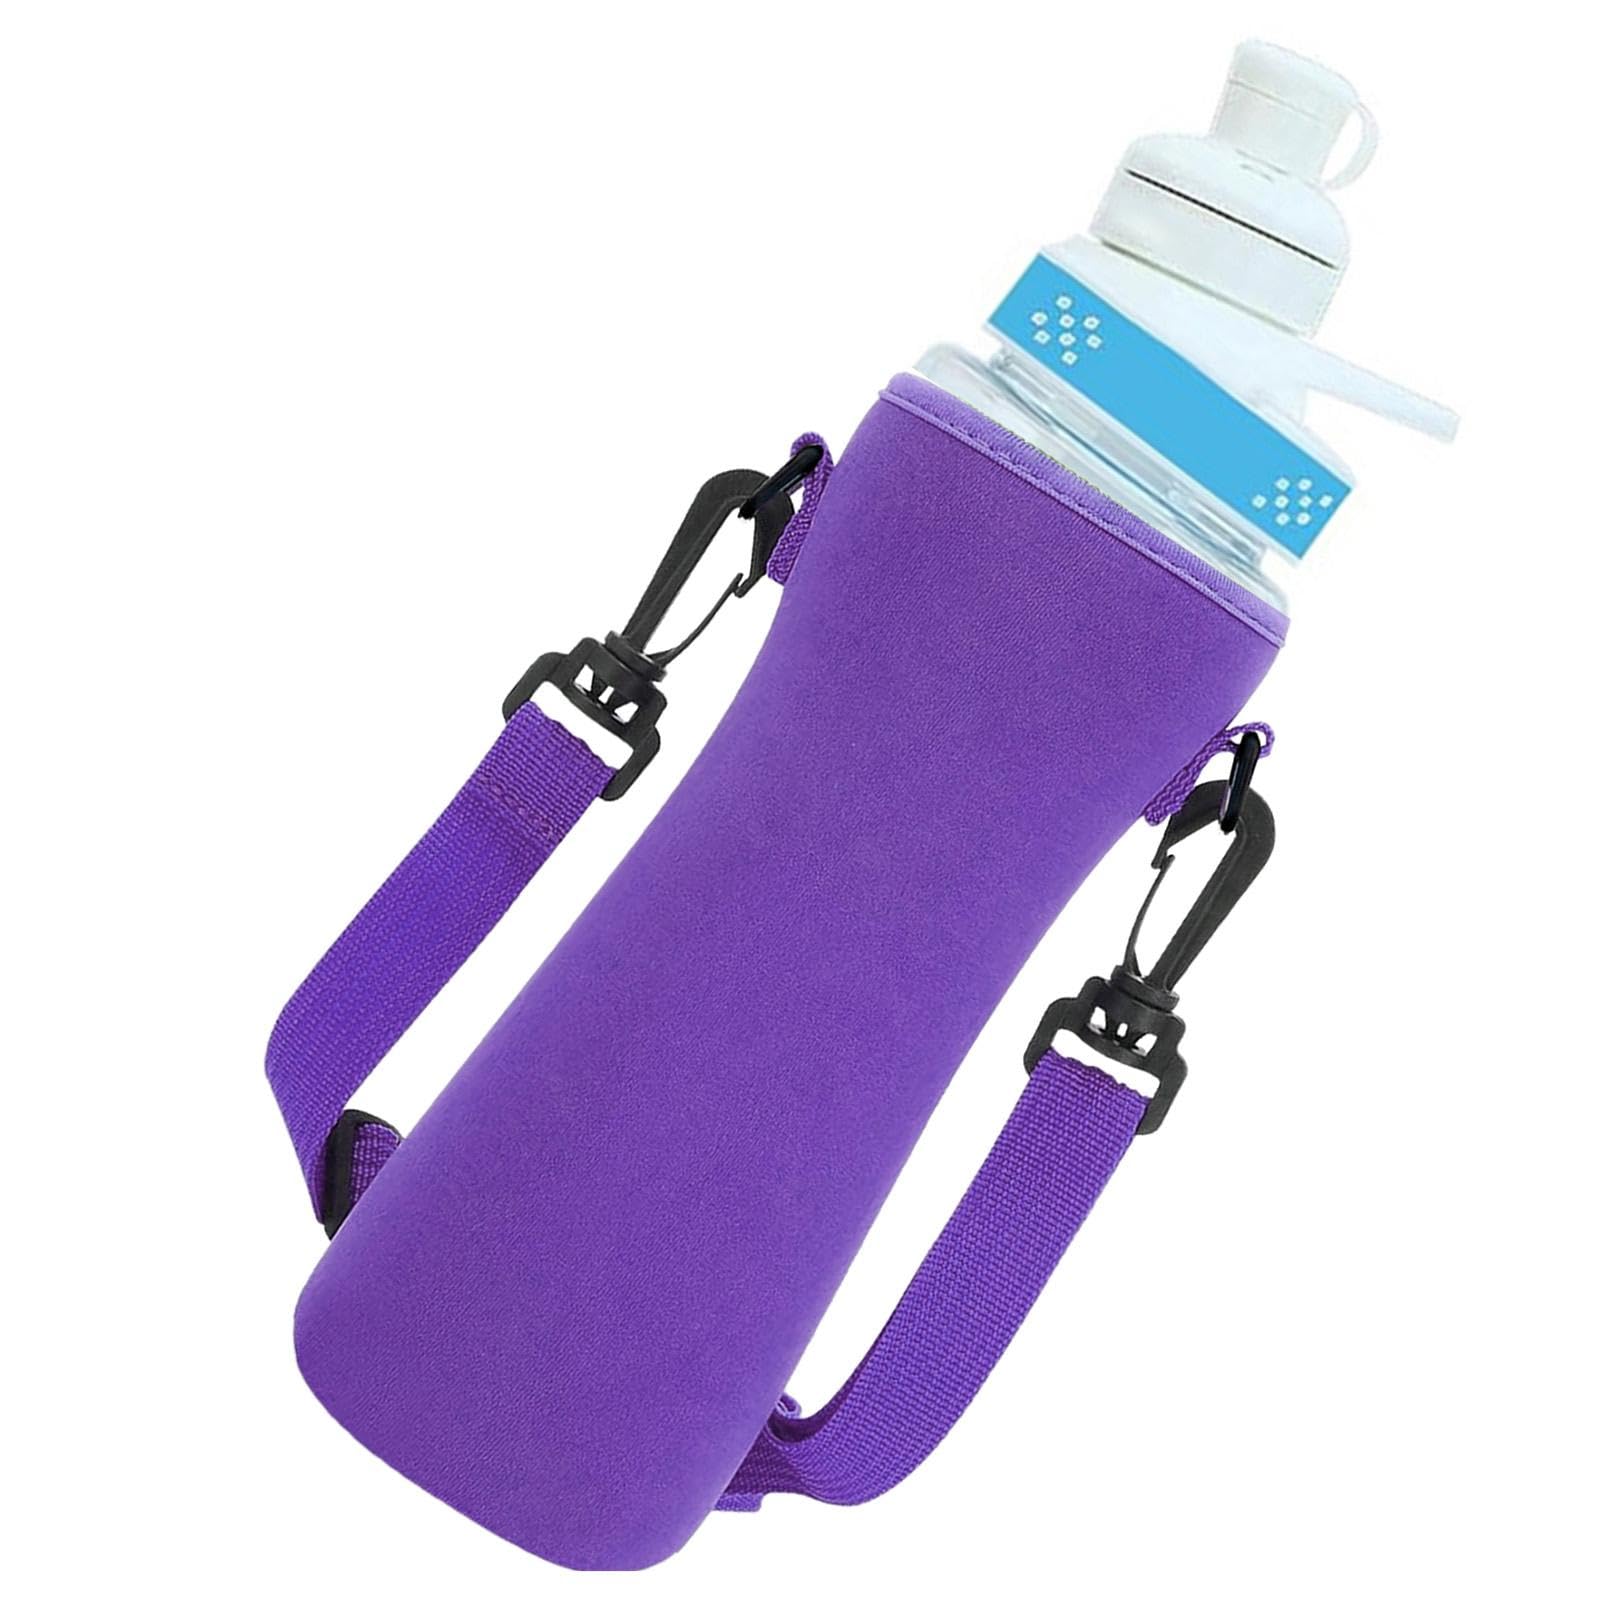 Qumiuu Neopren-Wasserflaschenhalter,Neopren-Flaschenhalter | Tragbarer, mit Neopren isolierter Wasserflaschenkühler - Tragbarer, mit Neopren isolierter Wasserflaschenkühler, isolierter Flaschenhalter, von Qumiuu